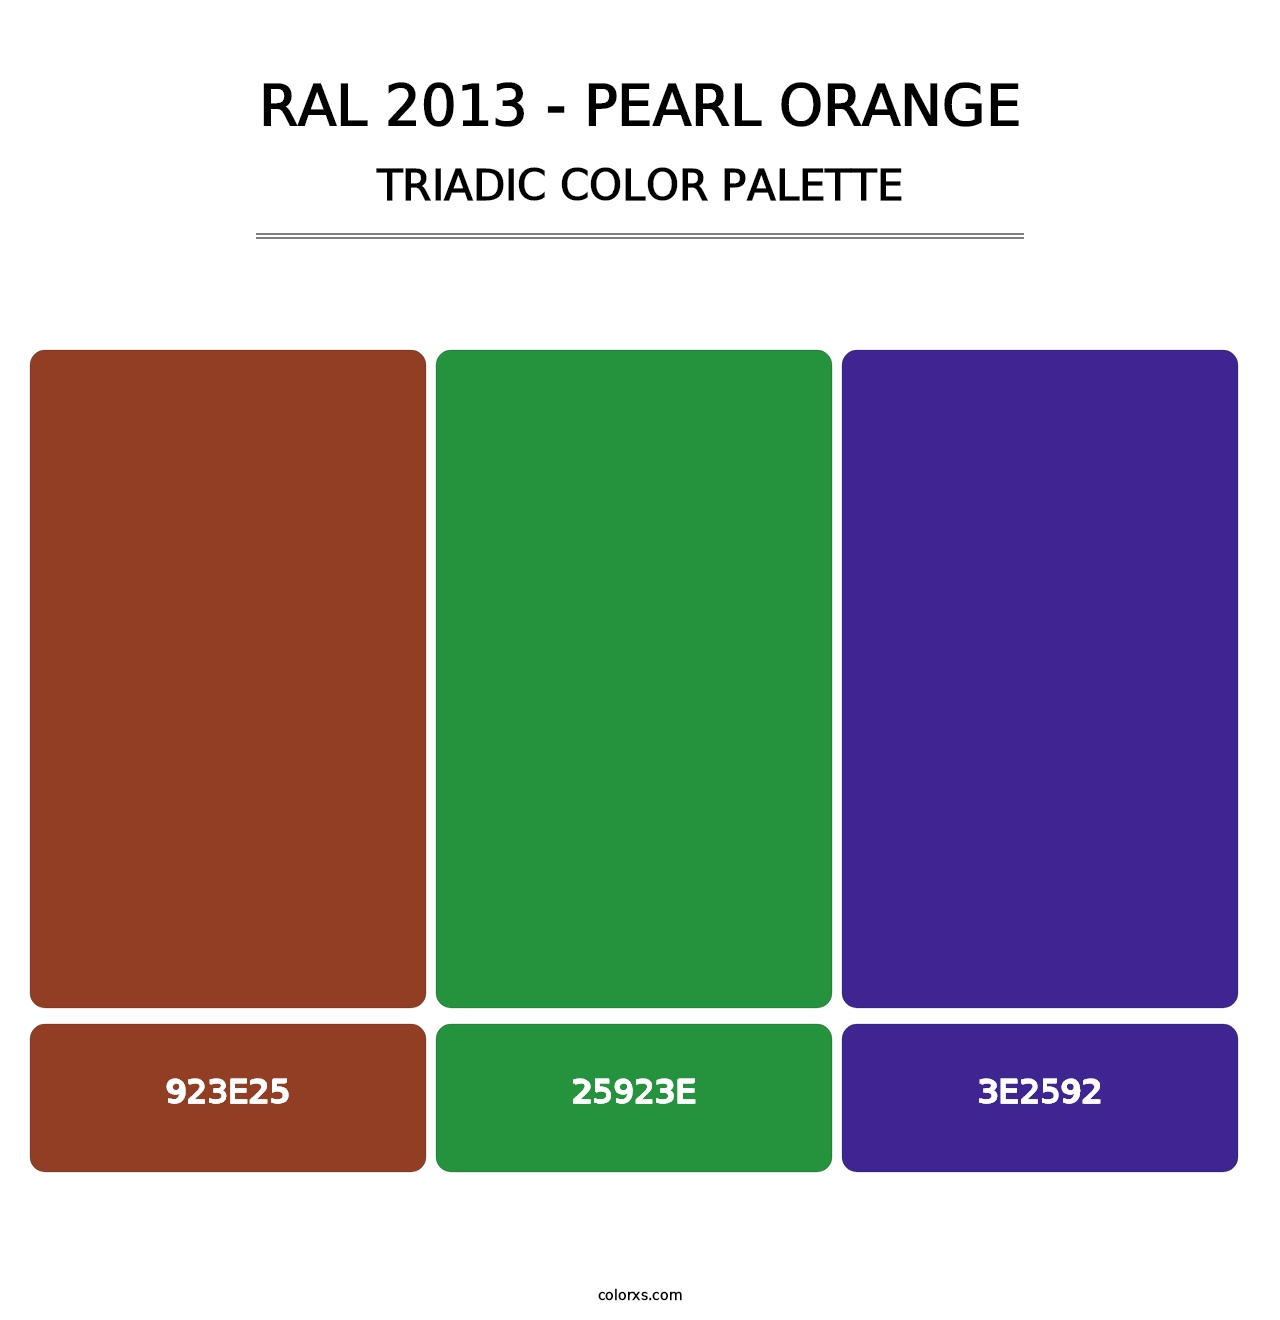 RAL 2013 - Pearl Orange - Triadic Color Palette